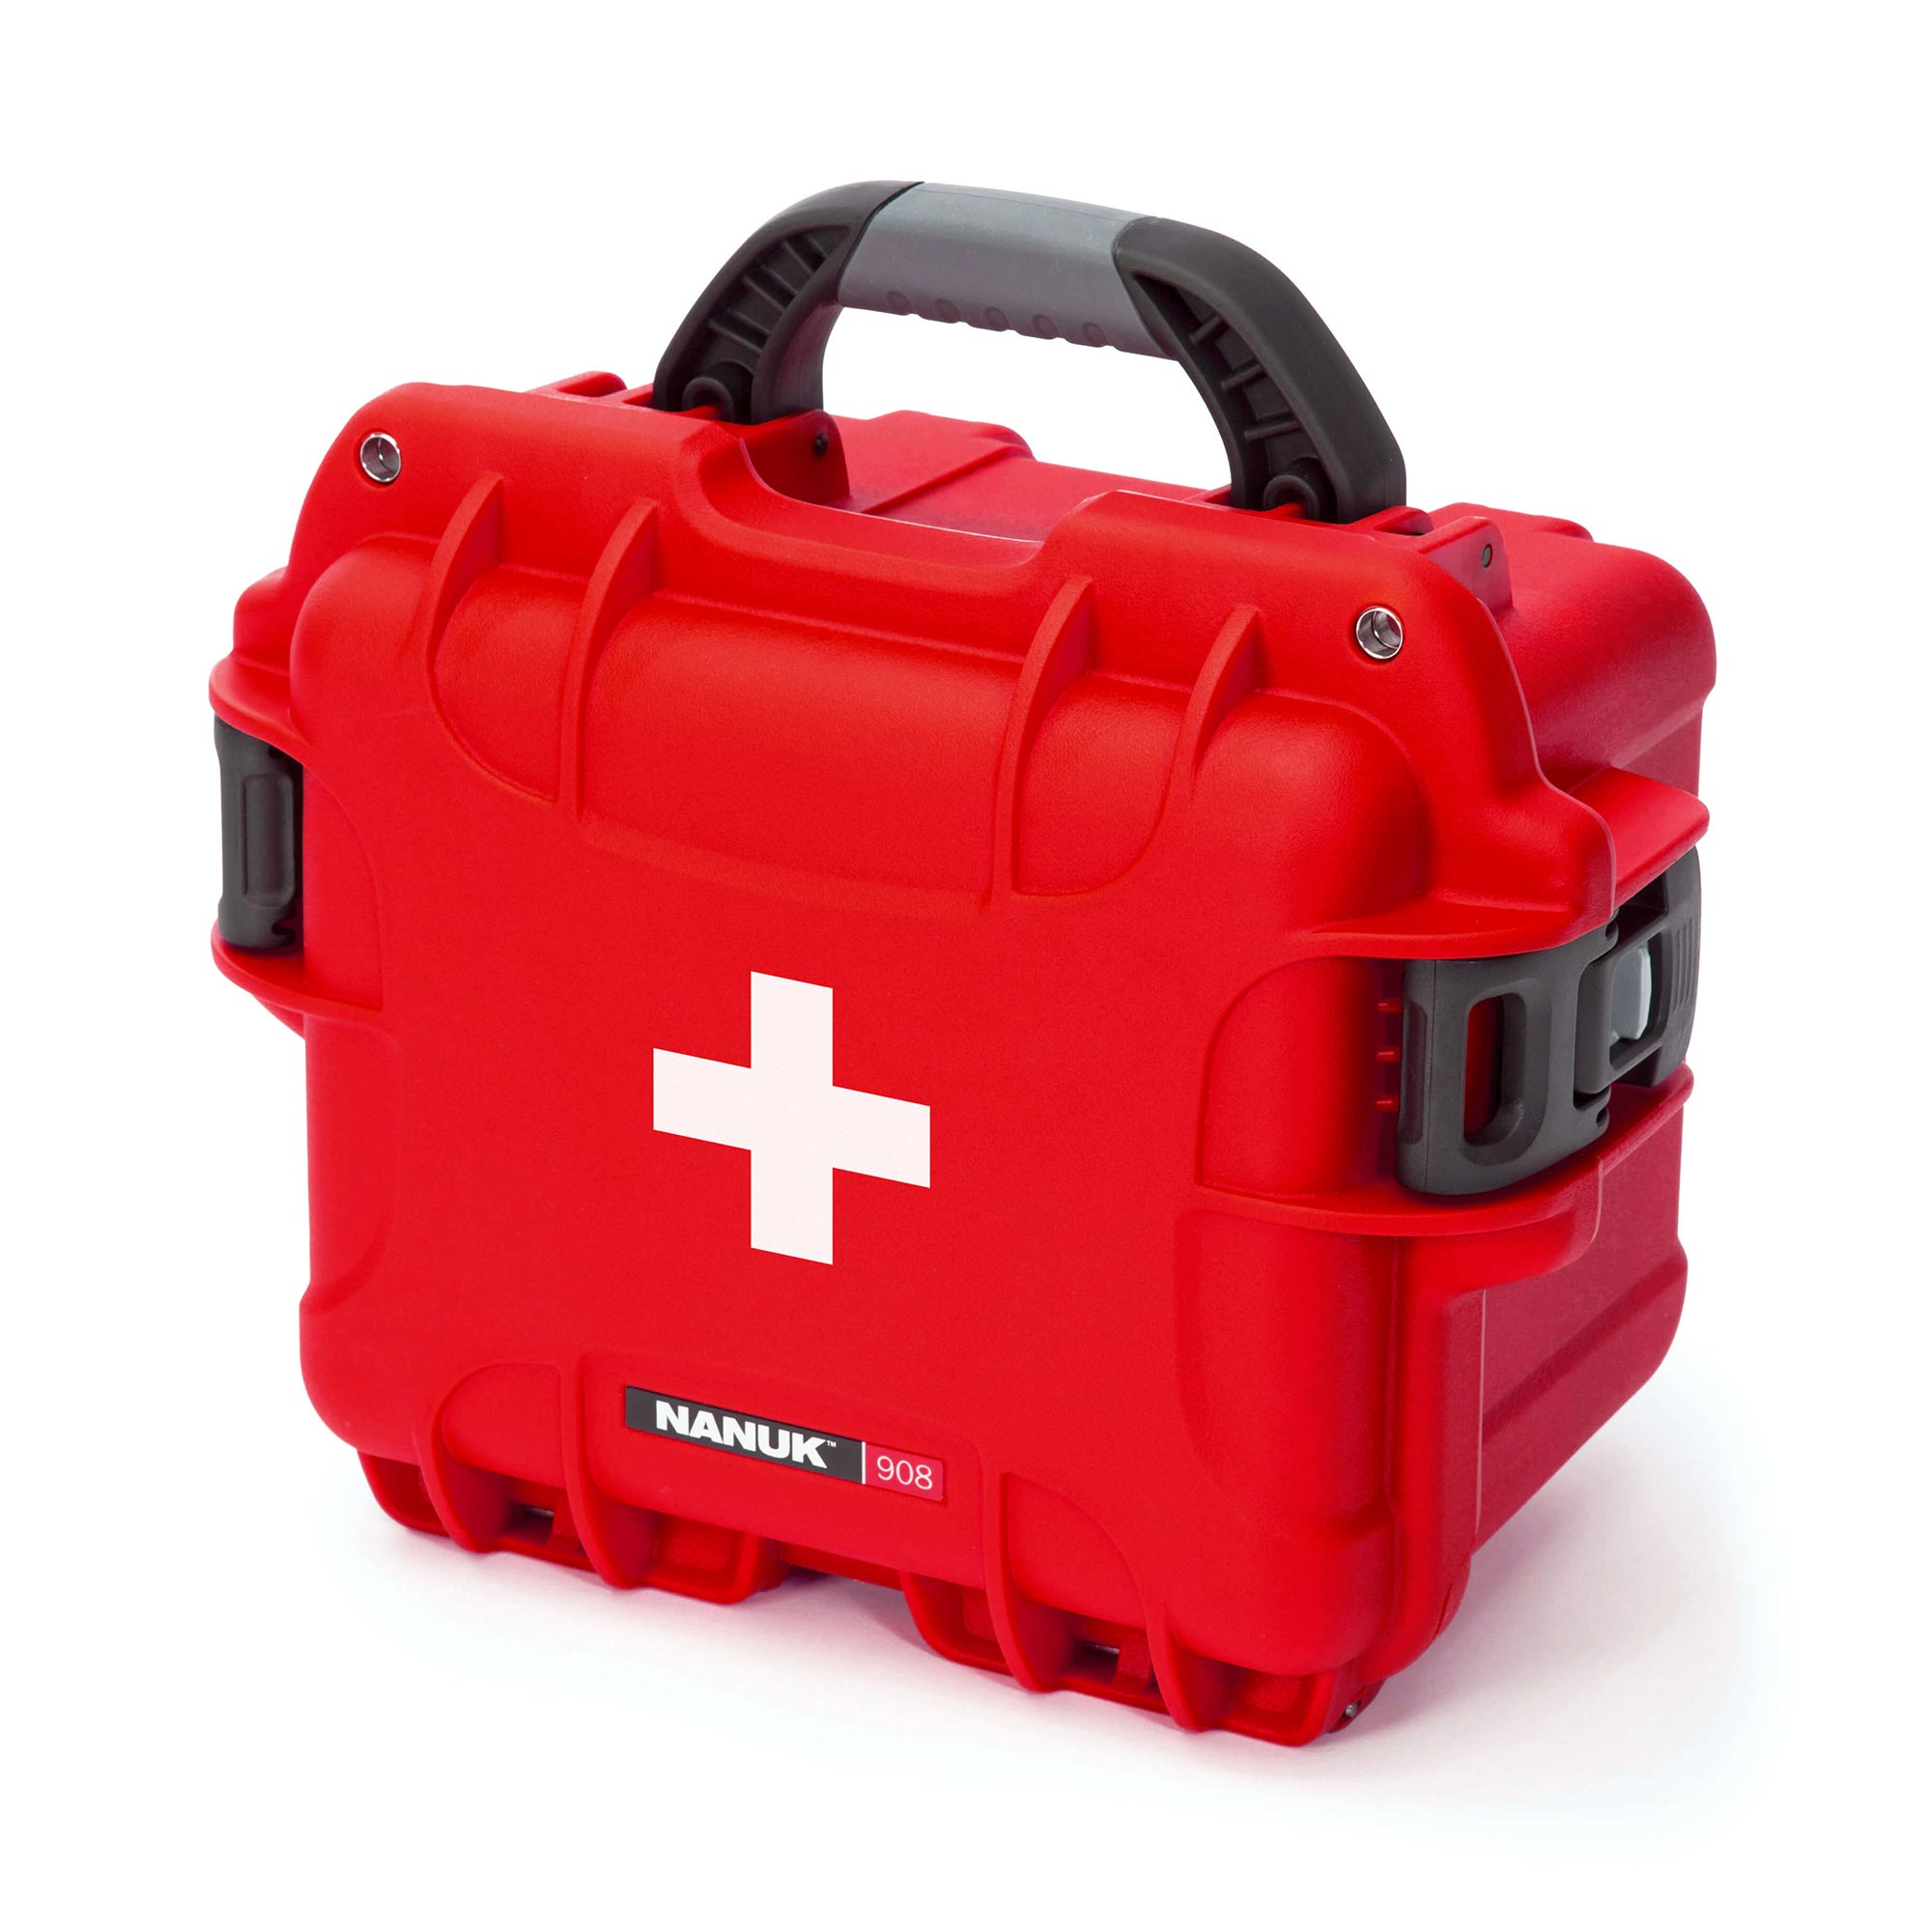 http://nanuk.eu/cdn/shop/products/outdoors-908-first-aid-case-product-shot-red-1_7a161f54-3a8e-45d8-9245-45e17e258baa.jpg?v=1655388430